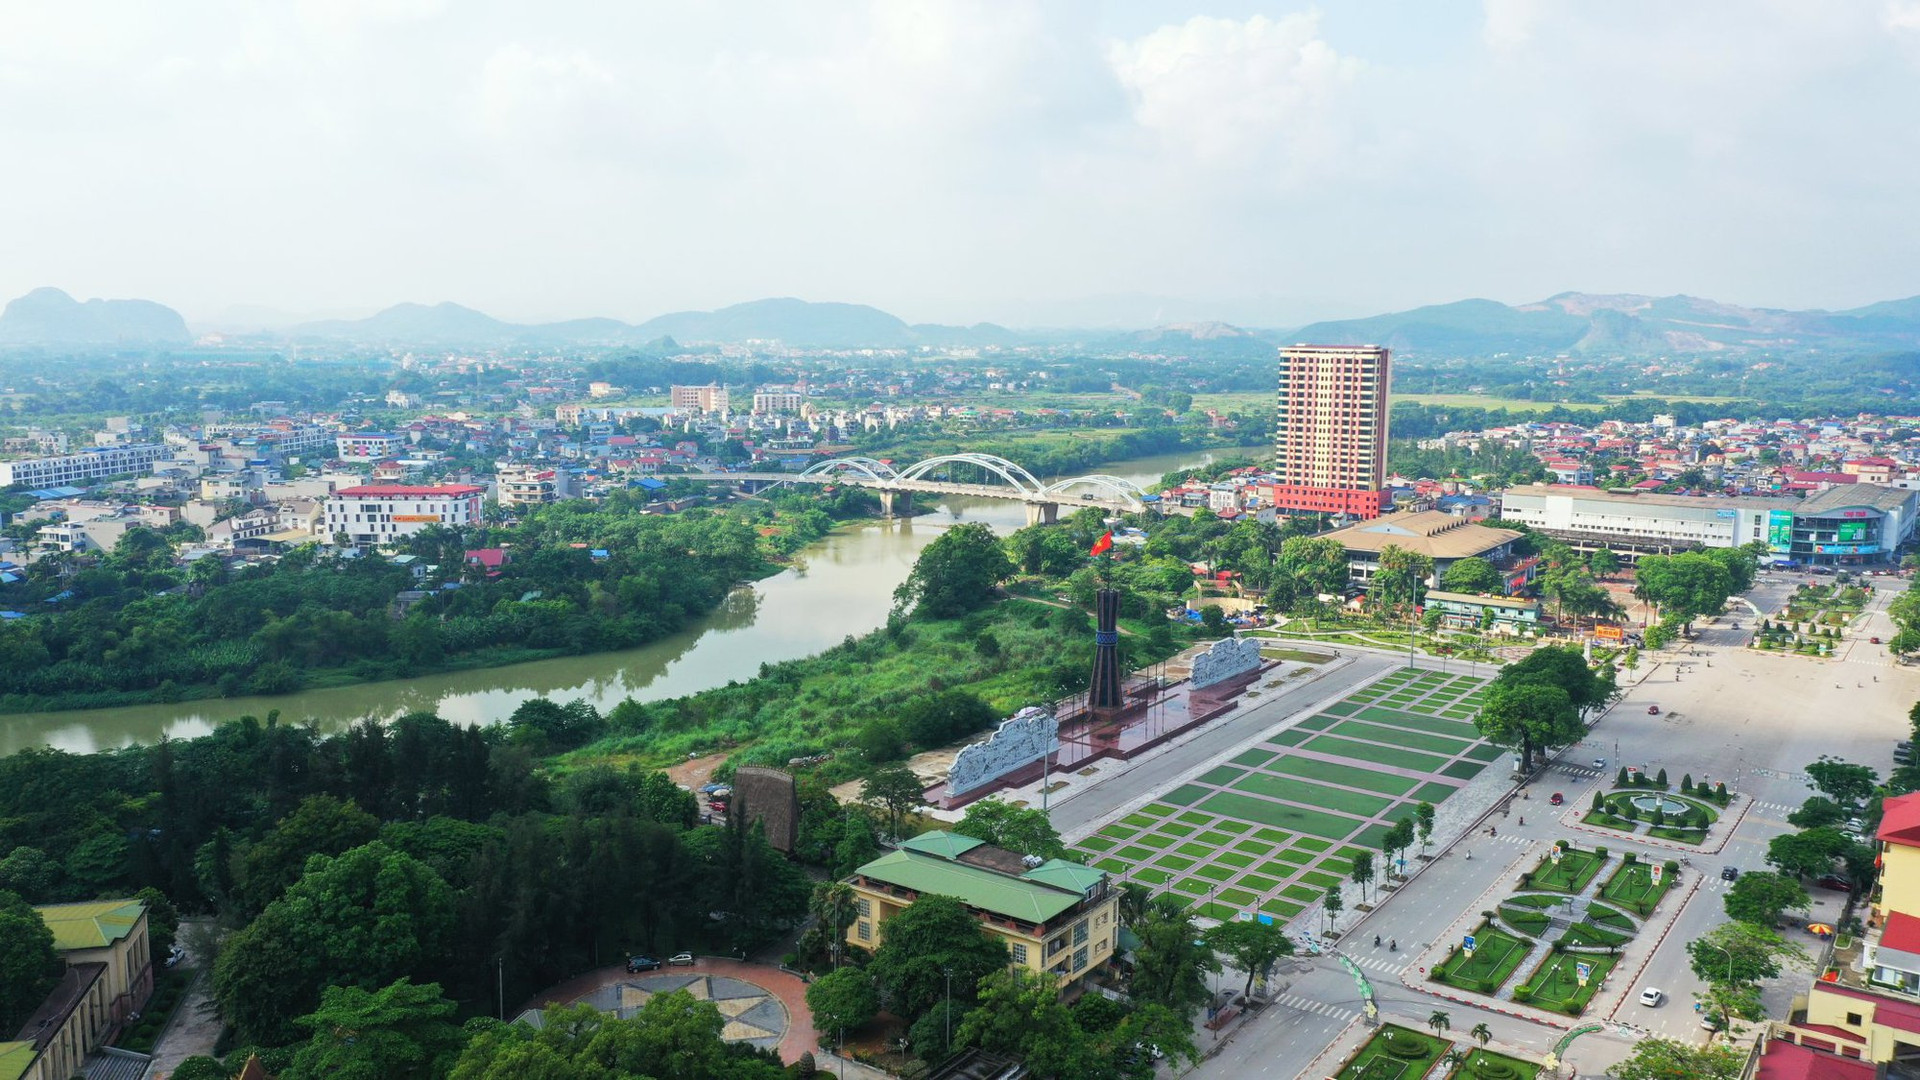 Tầm nhìn đến năm 2050, Thái Nguyên sẽ phấn đấu đạt tiêu chuẩn để trở thành một thành phố trực thuộc Trung ương, với môi trường sống xanh, thông minh và có bản sắc rõ ràng. Ảnh: Báo Điện tử Chính phủ